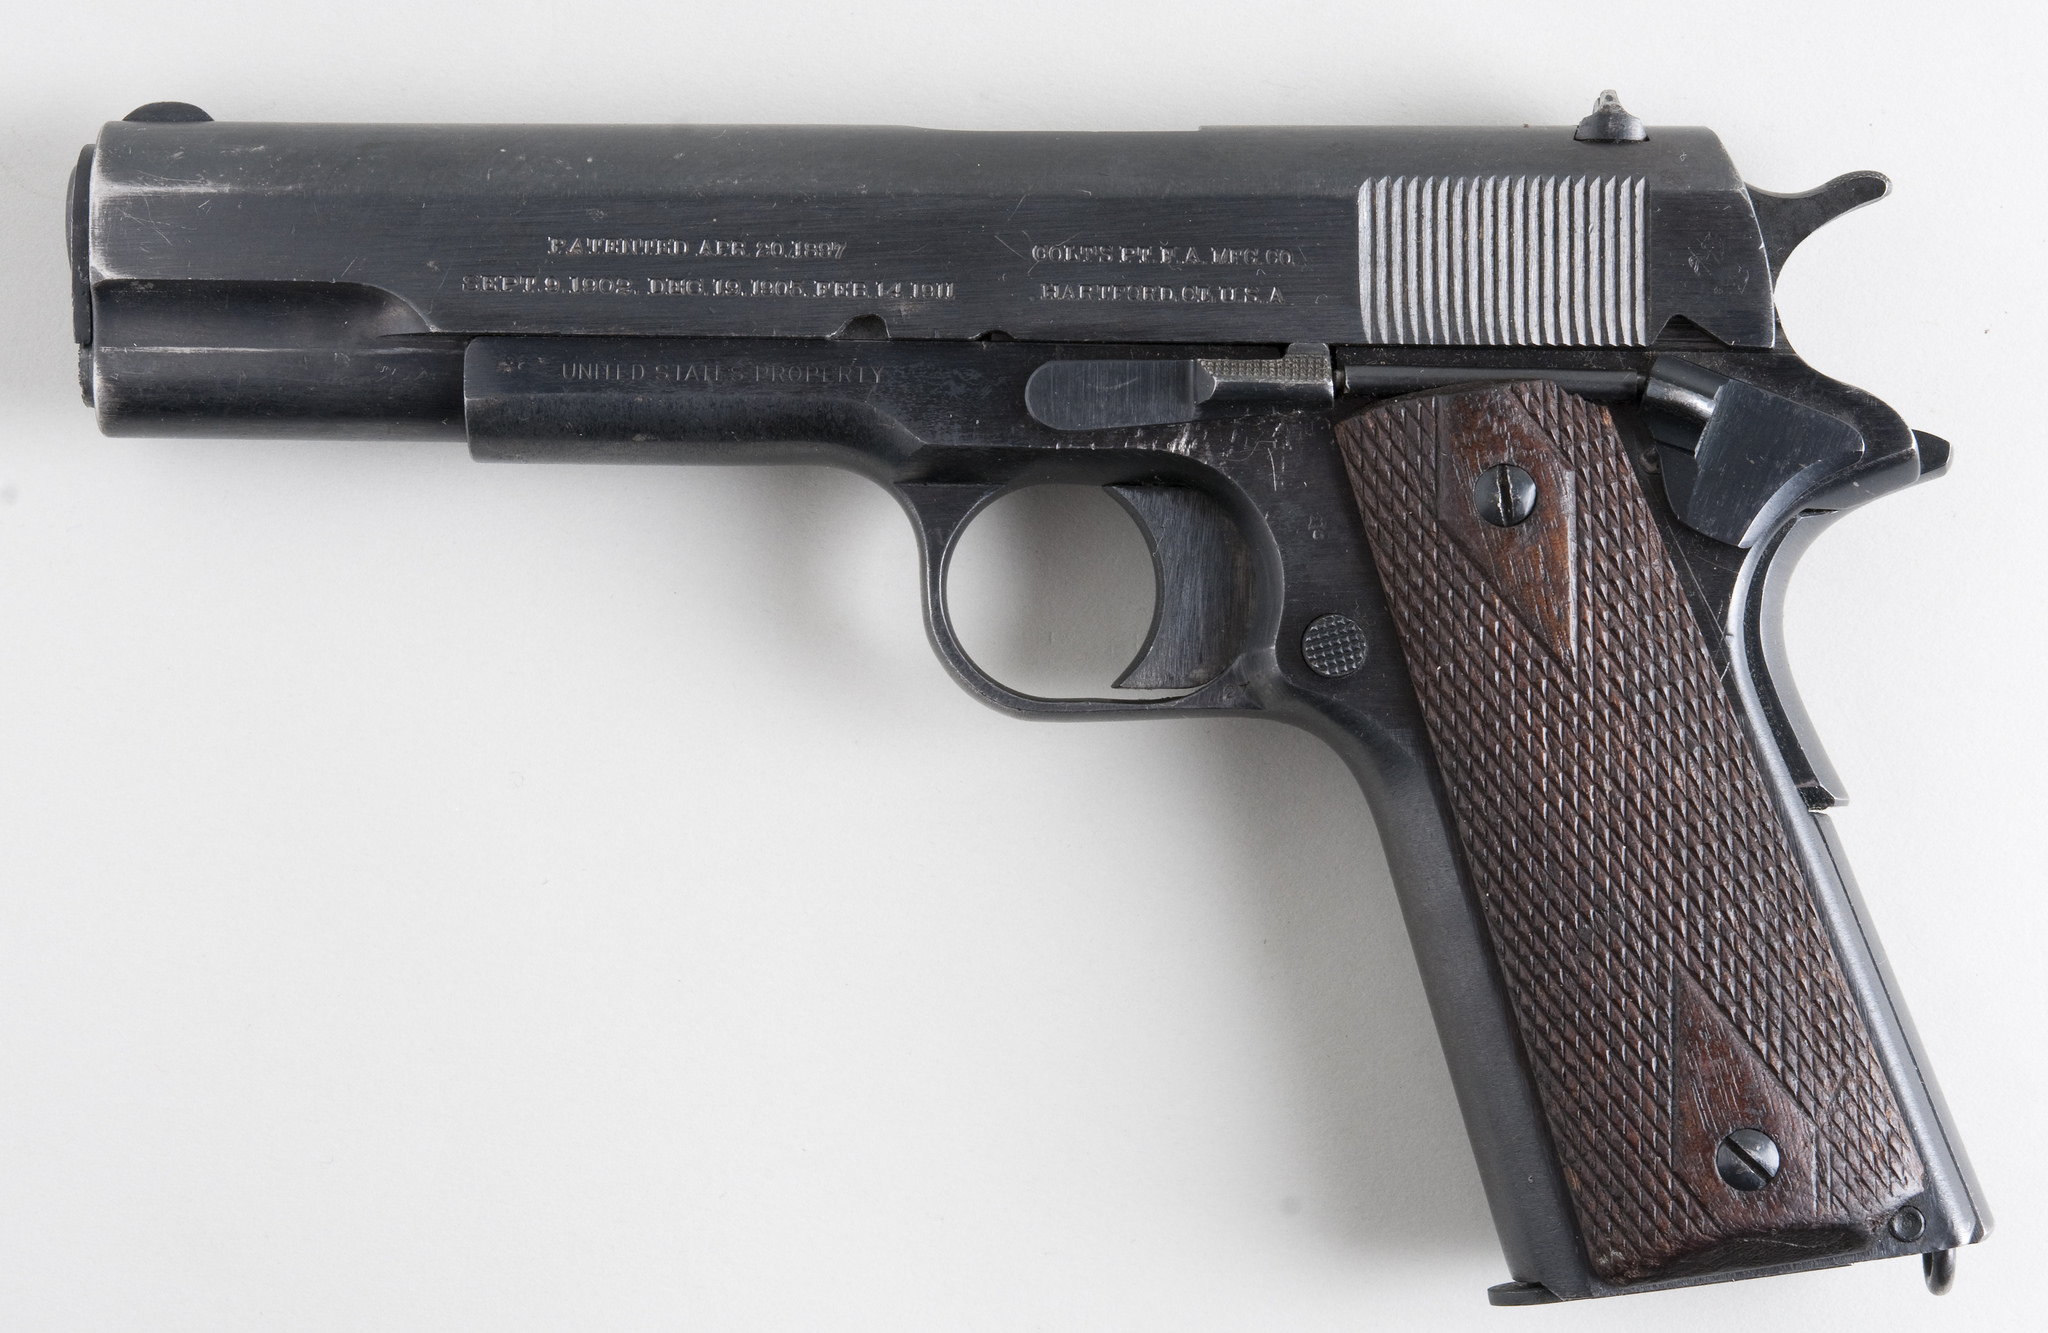 Colt M 1911 pistol